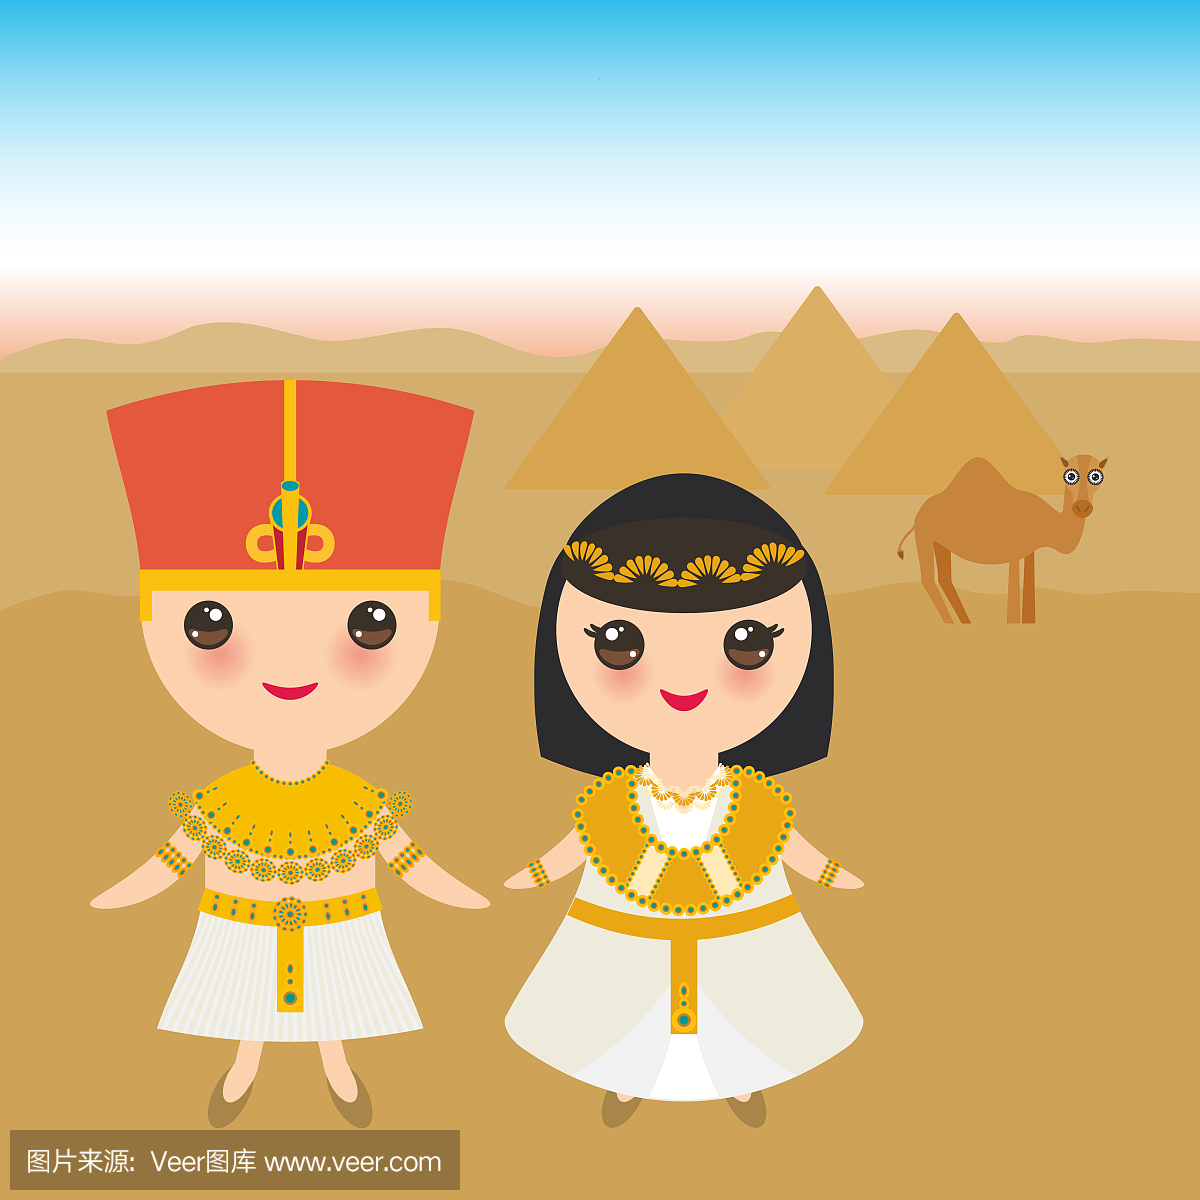 古埃及男孩和女孩在民族服装和帽子。景观,金